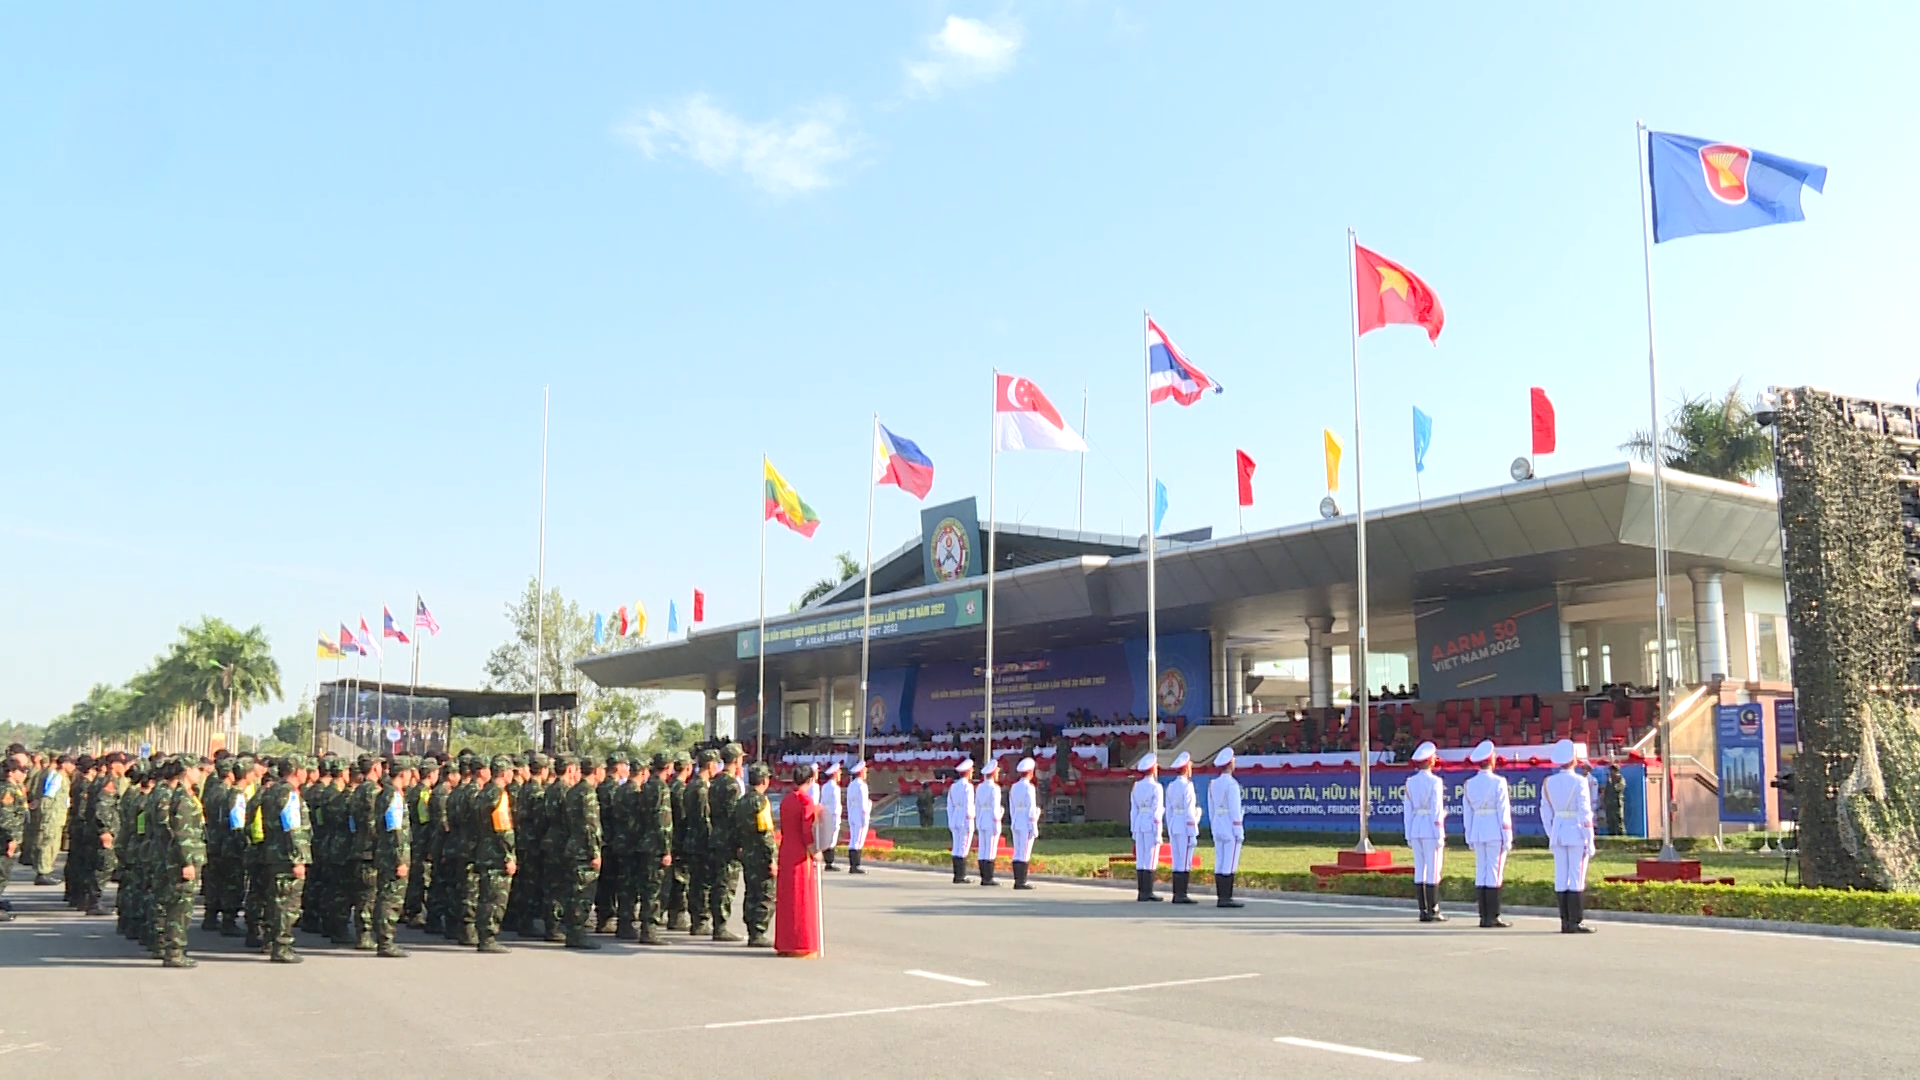 Lễ thượng cờ là một nghi lễ quan trọng của Quốc gia, có khoảnh khắc cảm xúc khi cờ được nâng lên cao và nghe tiếng quốc ca. Hãy cùng chiêm ngưỡng những bức ảnh đẹp về lễ thượng cờ trong những ngày lễ trọng đại, thể hiện sự kiêu hãnh và tự hào của đất nước và nhân dân Việt.